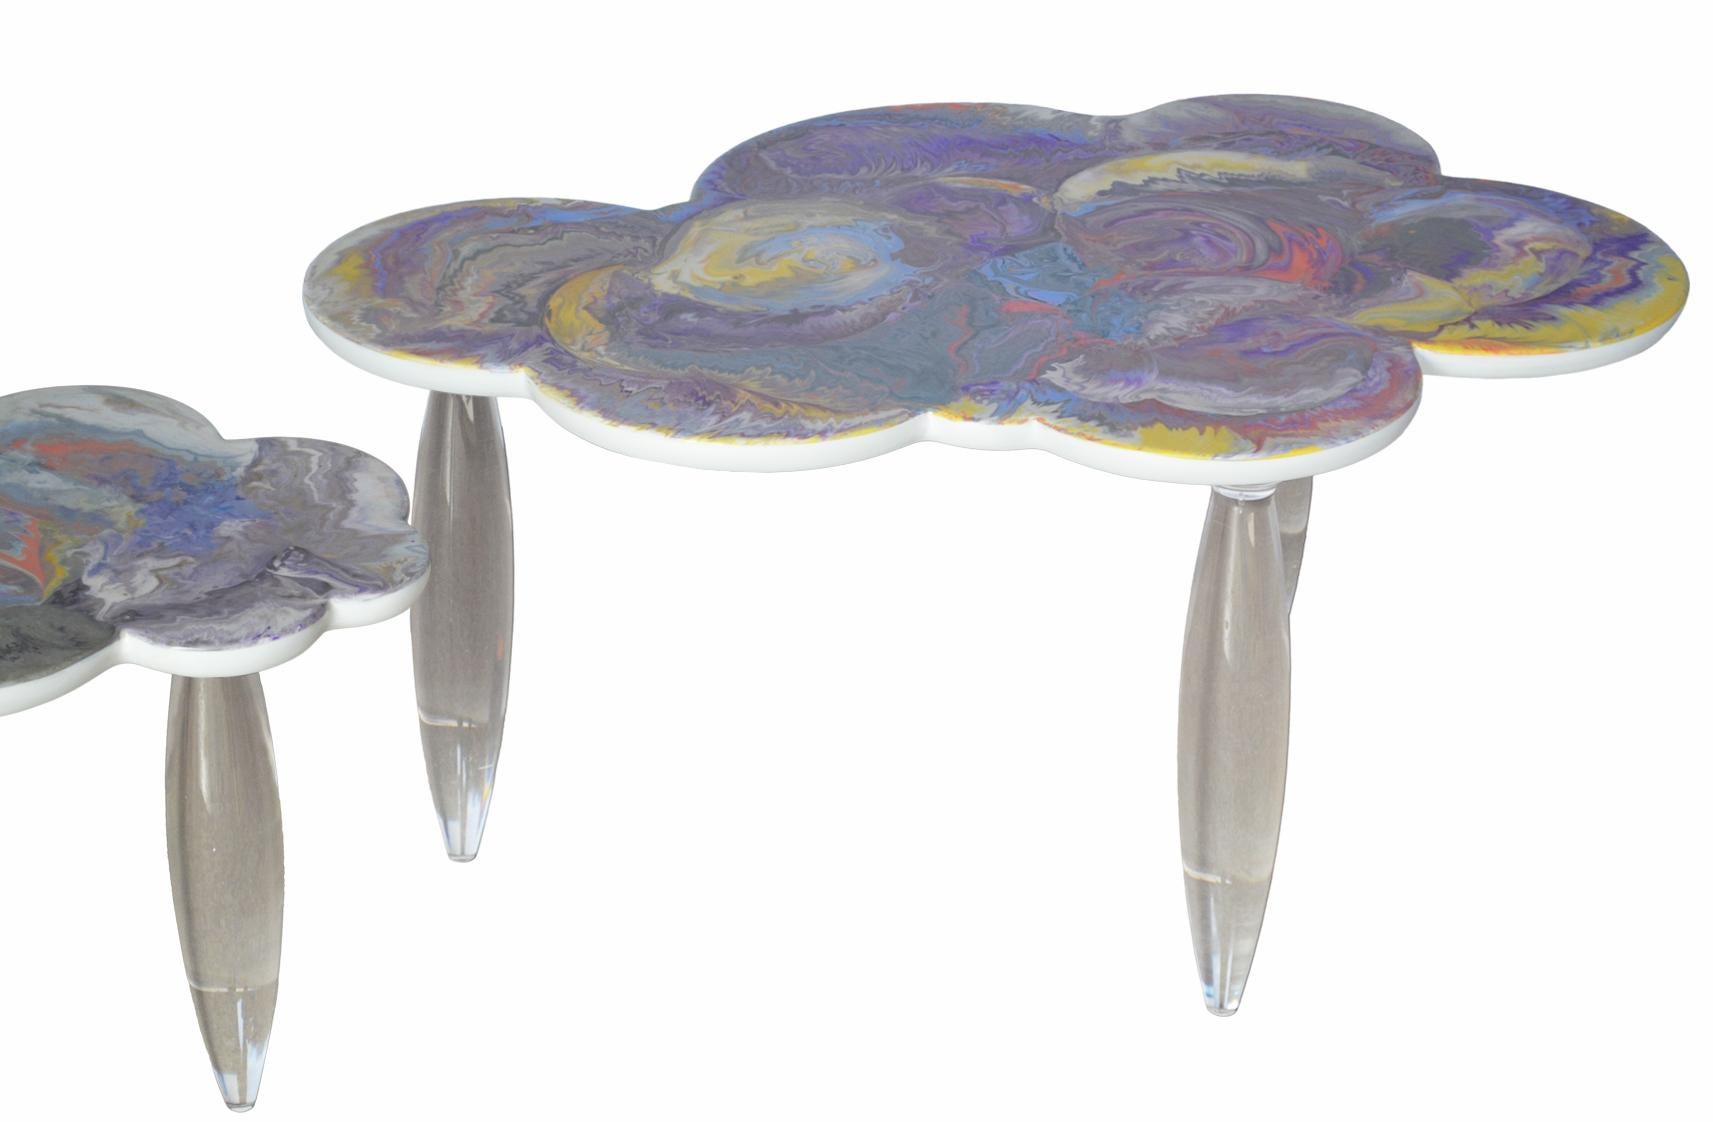 Moderne Table basse avec plateau en scagliola et pieds en plexiglas, fabriquée à la main en Italie, disponible en vente